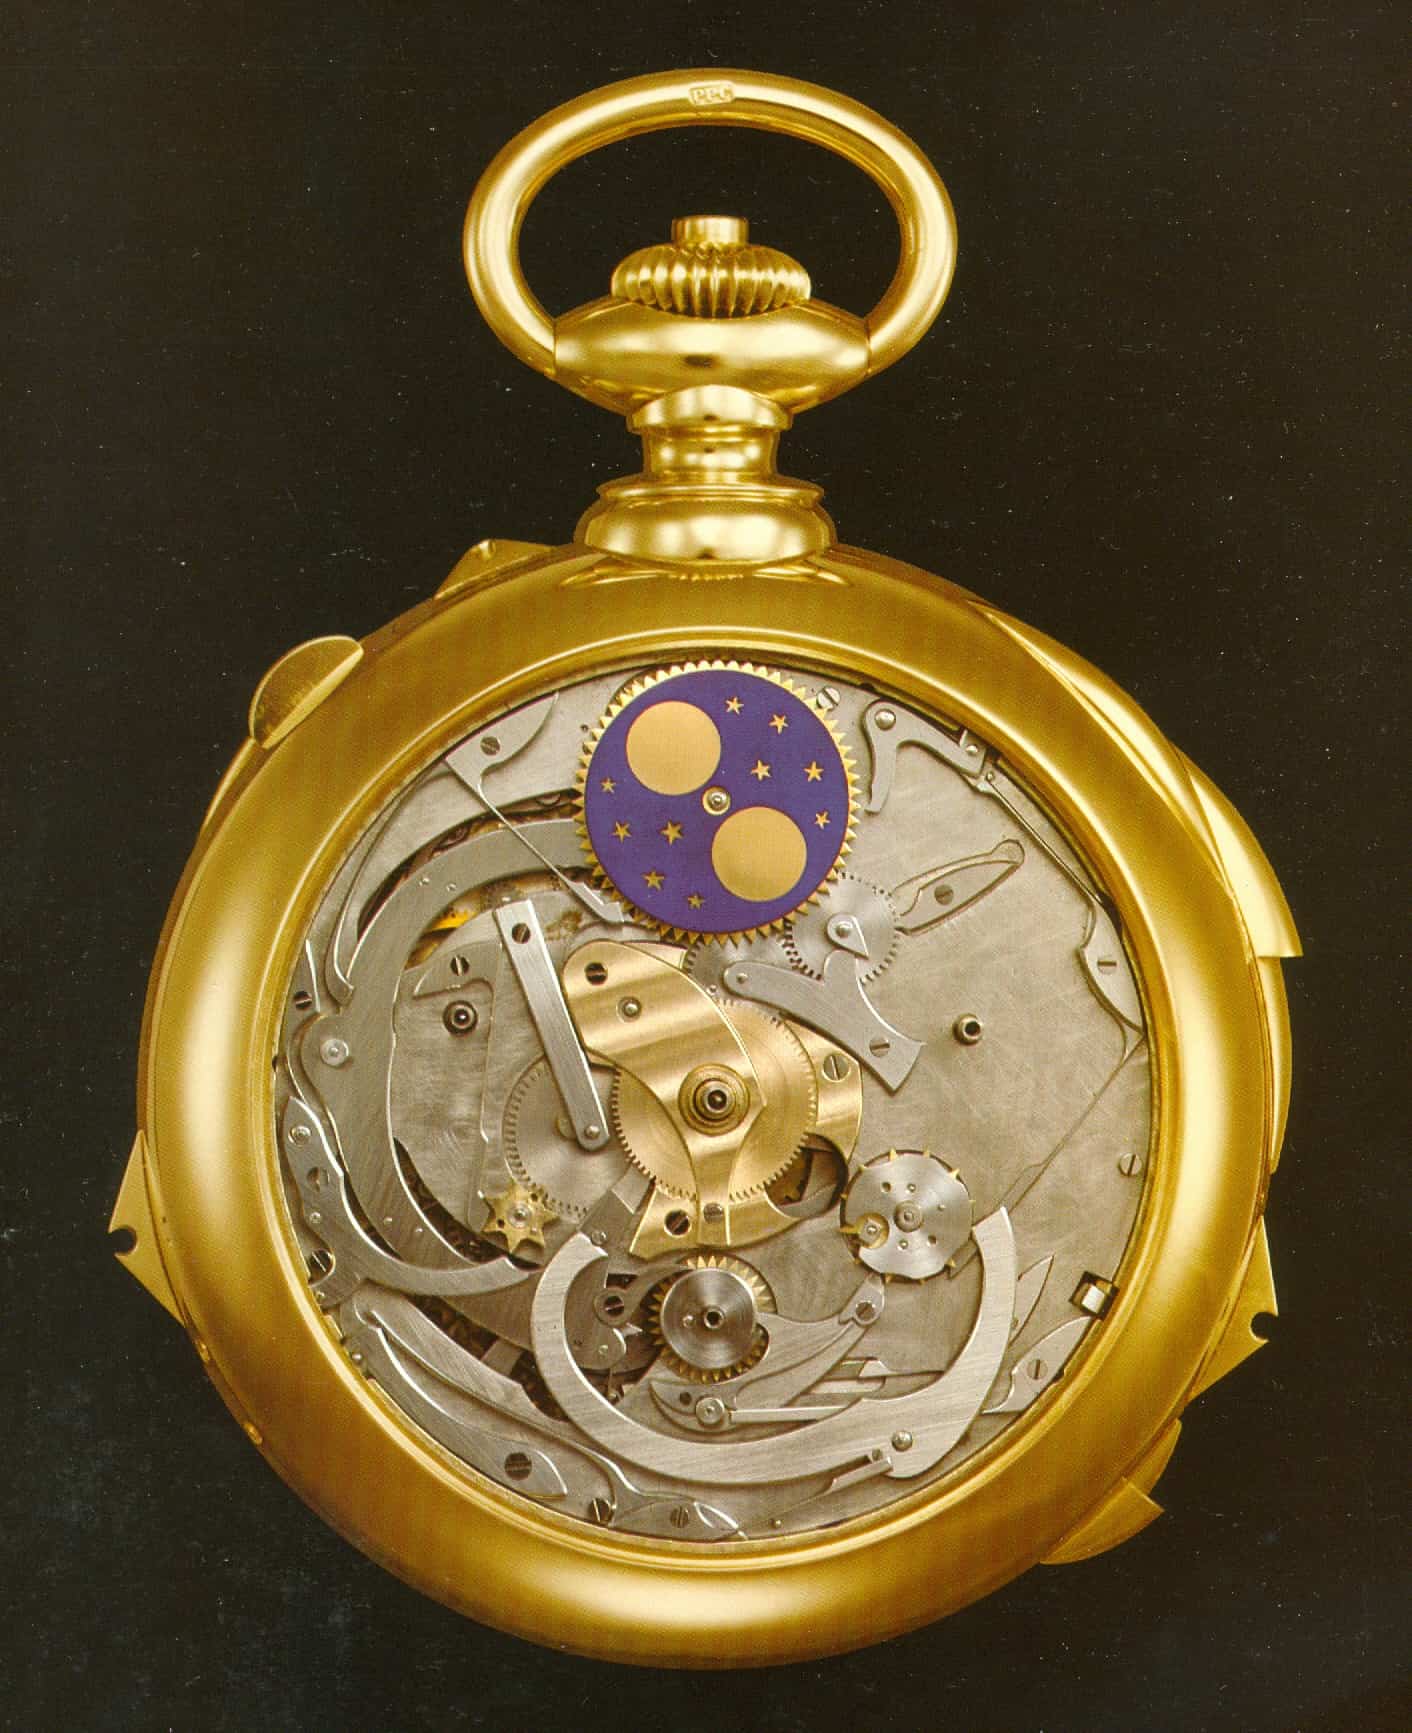 Unter dem Zifferblatt erkennt man das komplizierte Uhrwerk der Henry Graves Jun. Taschenuhr von Patek Philippe